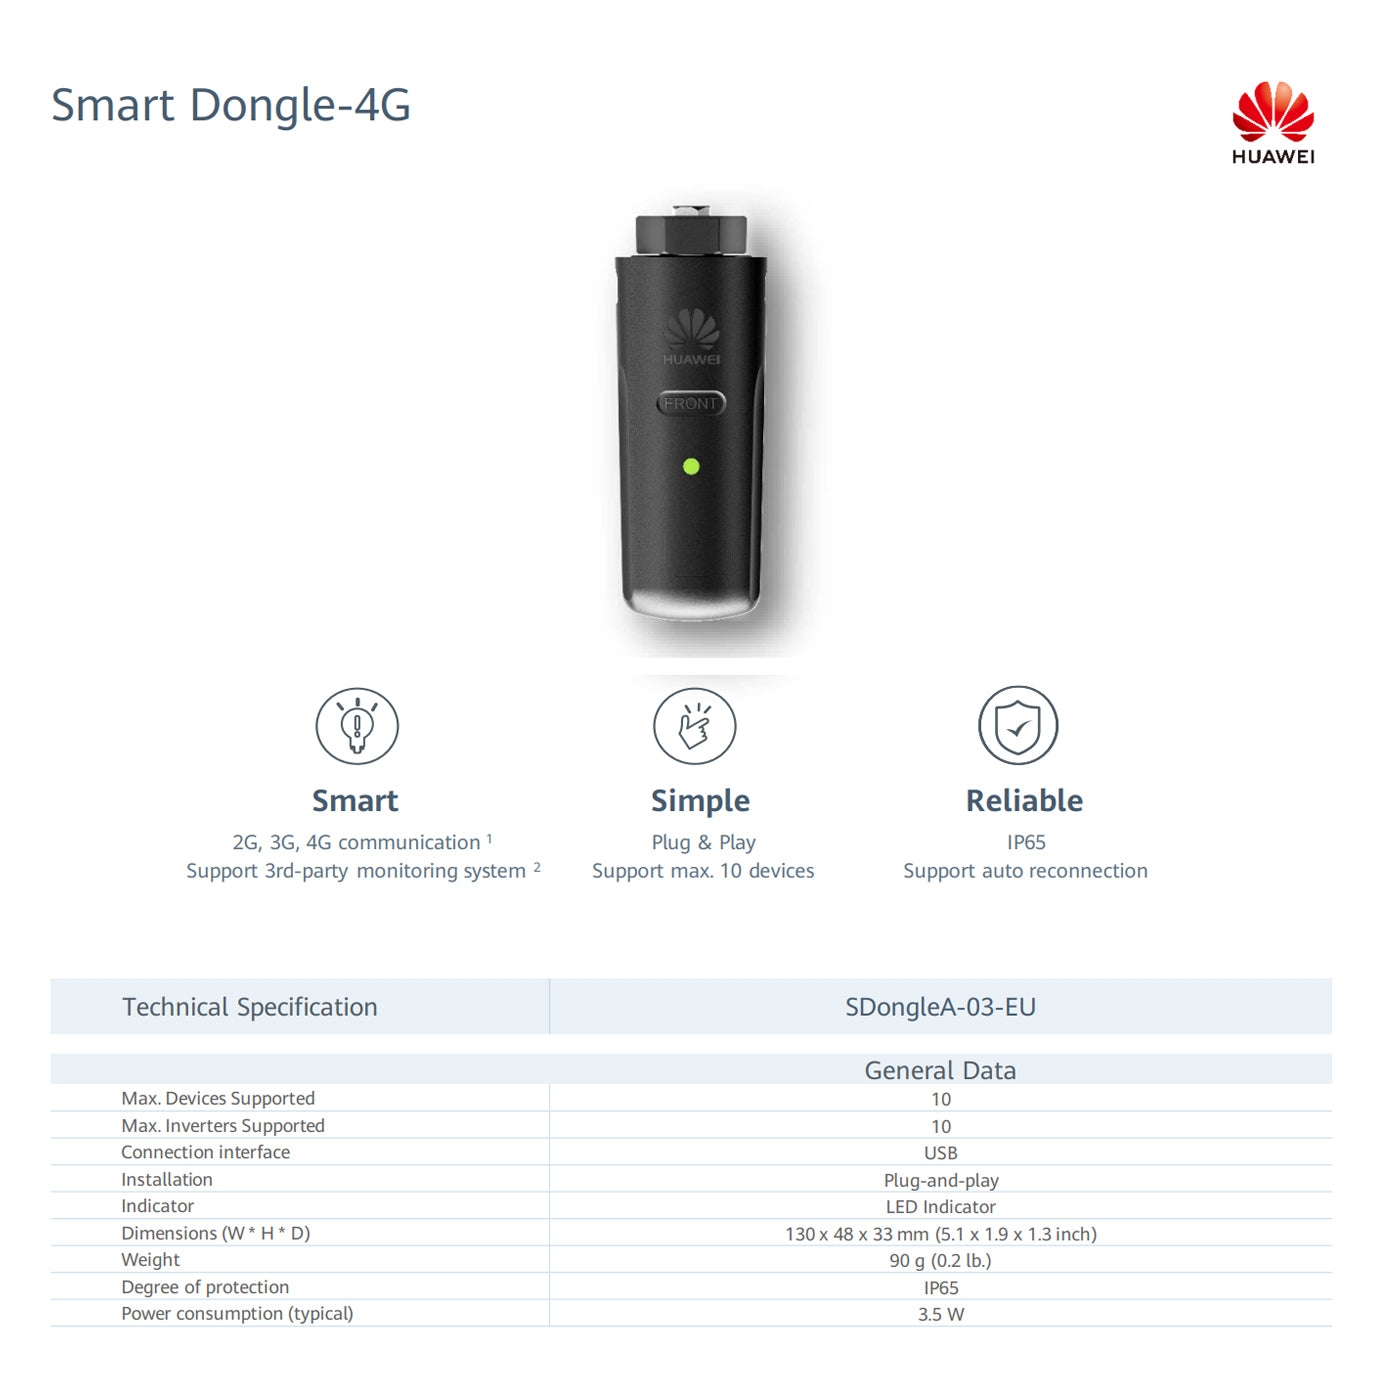 HUAWEI Smart Dongle 4G data sheet